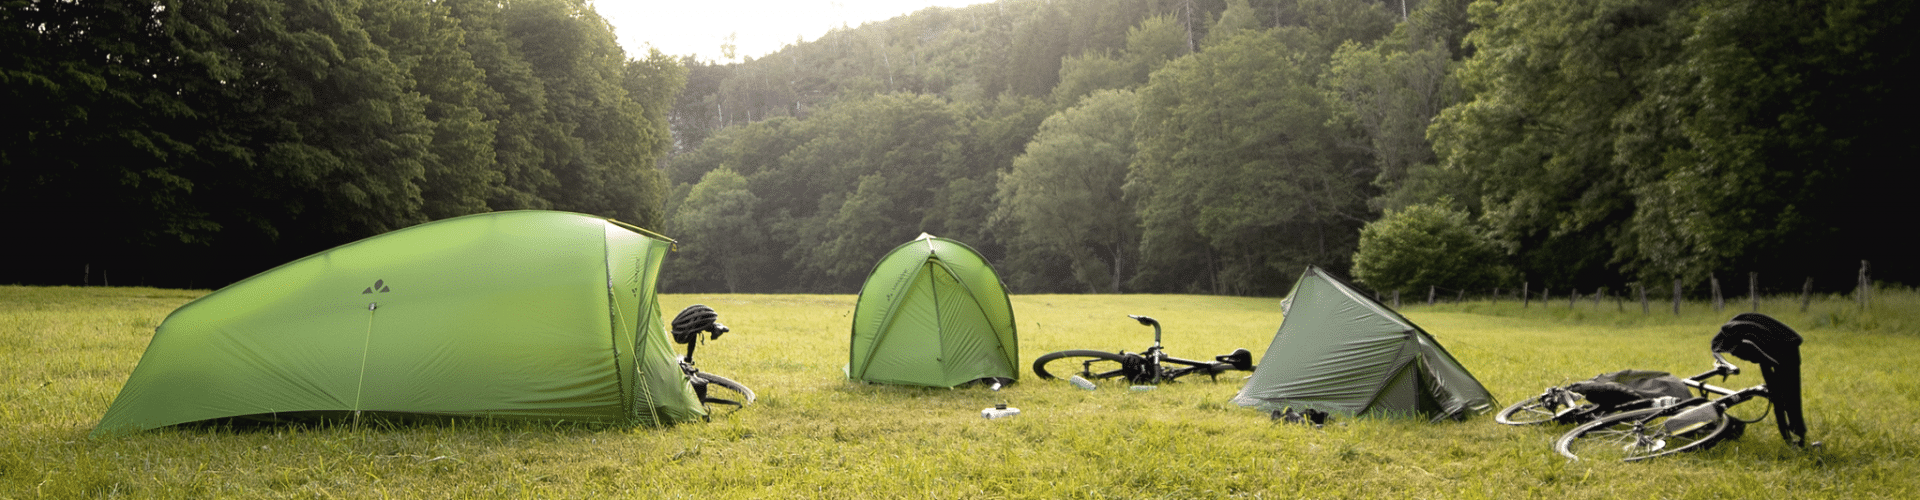 3 tentes VAUDE montées sur une prairie entourée d'arbres. Un vélo est posé à côté de chaque tente.